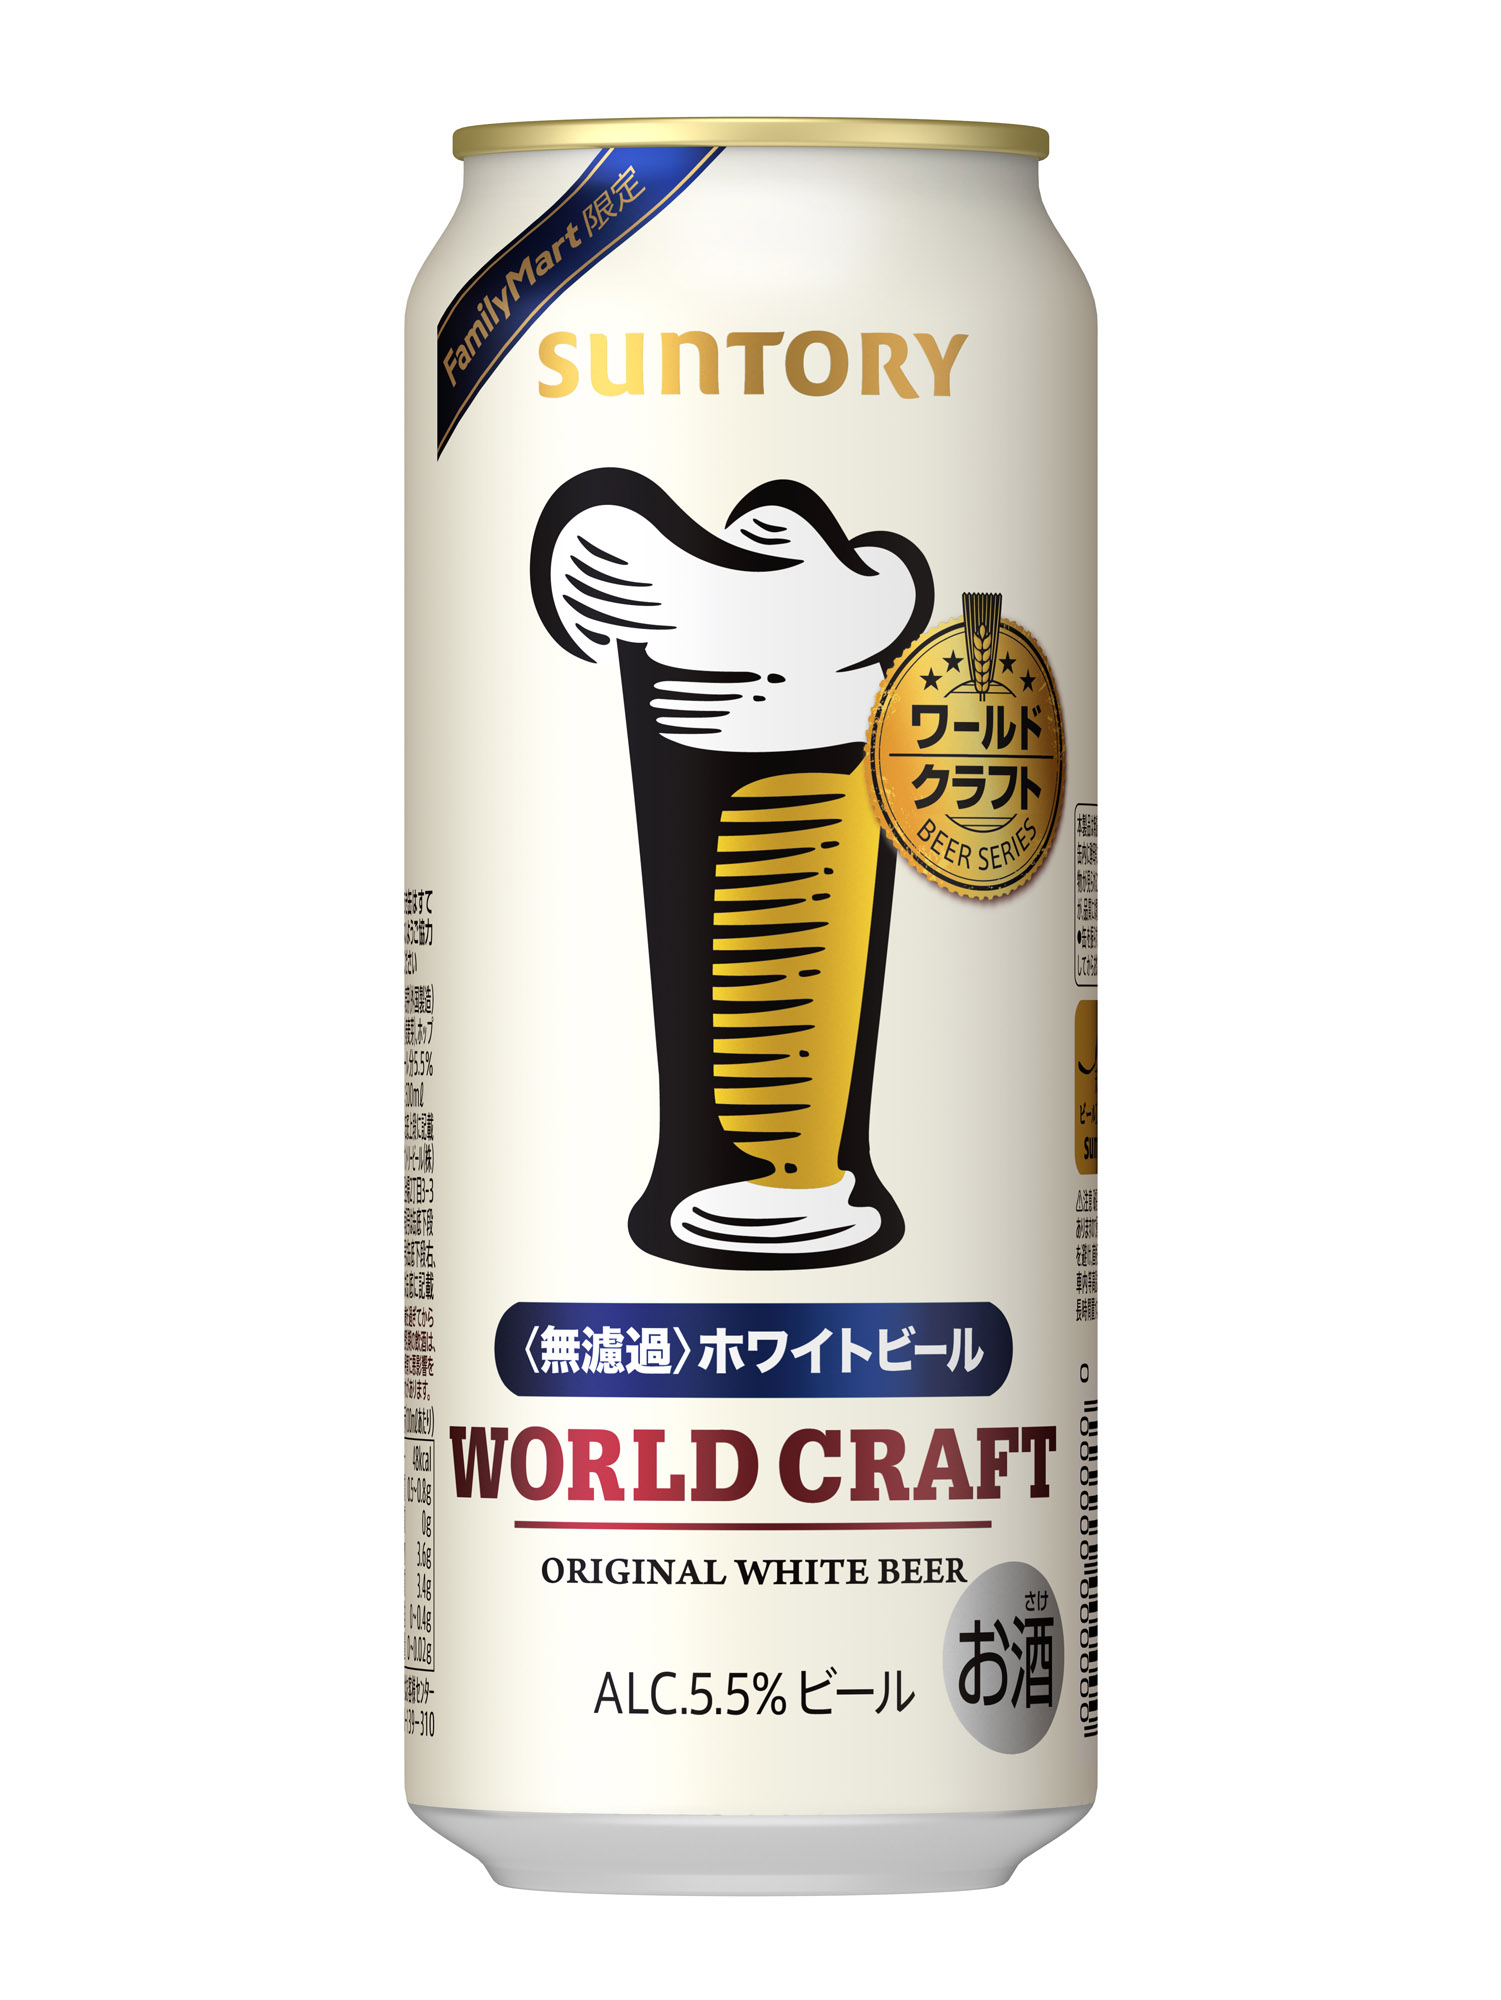 全国のファミリーマート限定ビール「ワールドクラフト」発売 2022年2月2日 ニュースリリース サントリー